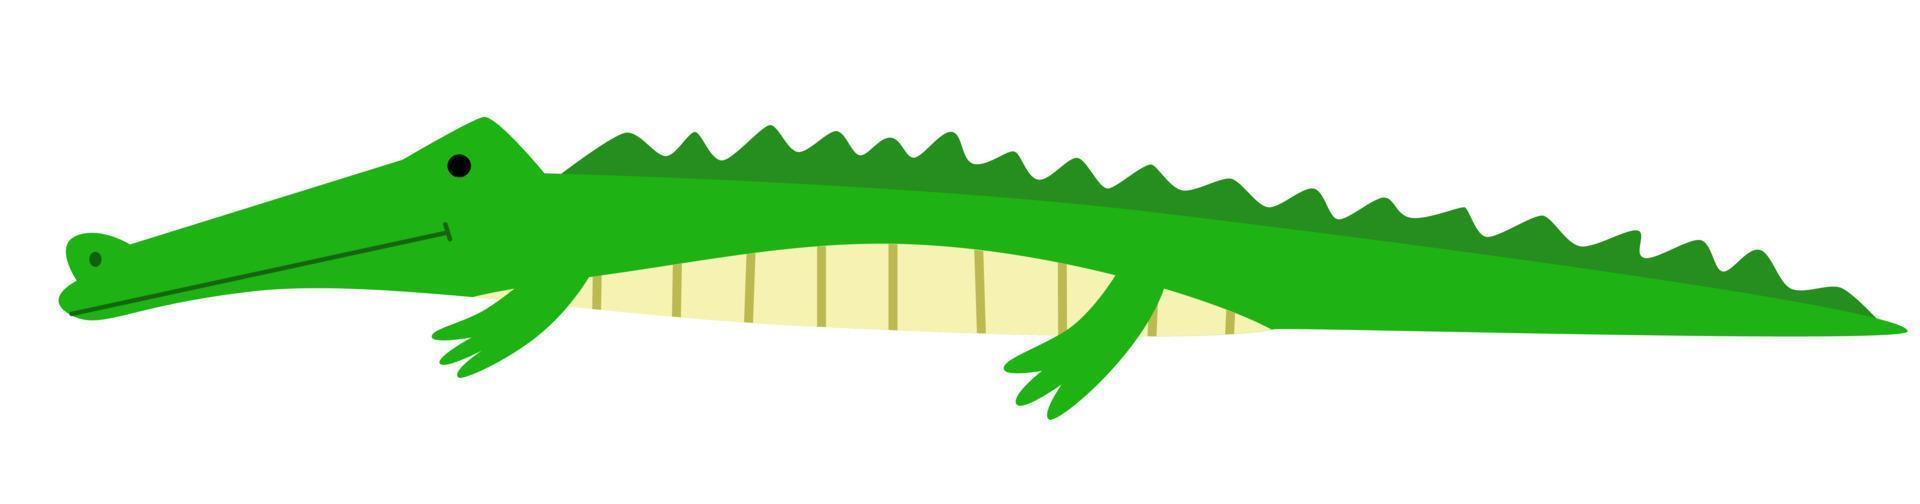 illustration vectorielle d'un crocodile dans un style plat vecteur